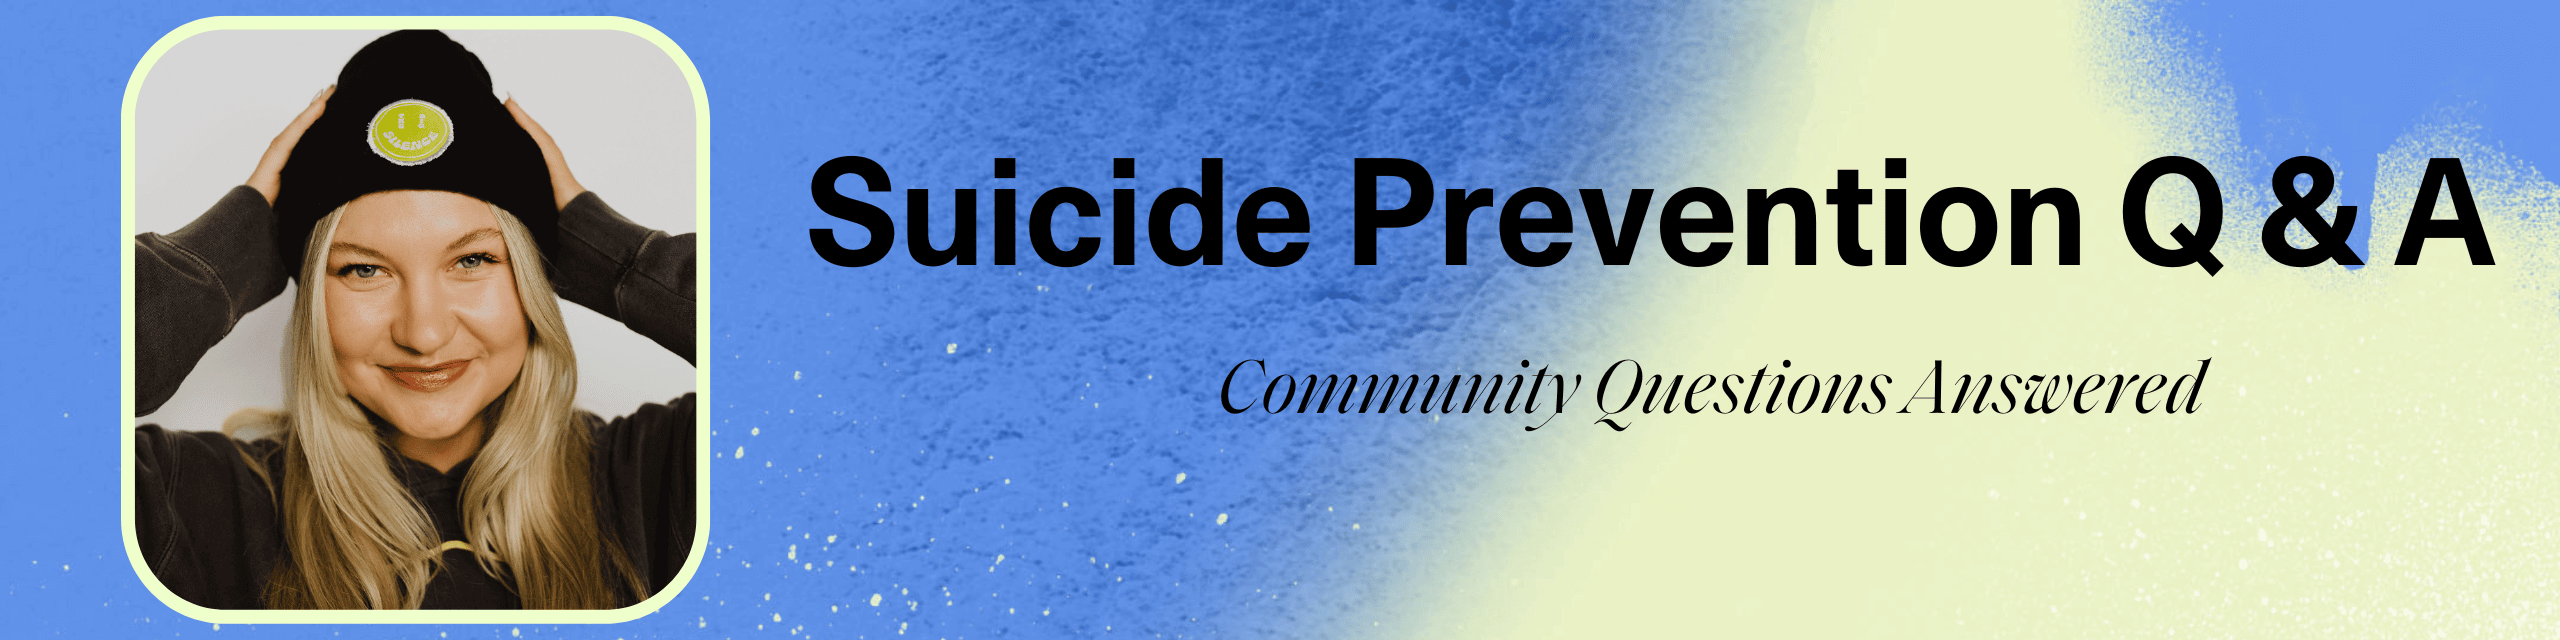 Suicide Prevention Q & A